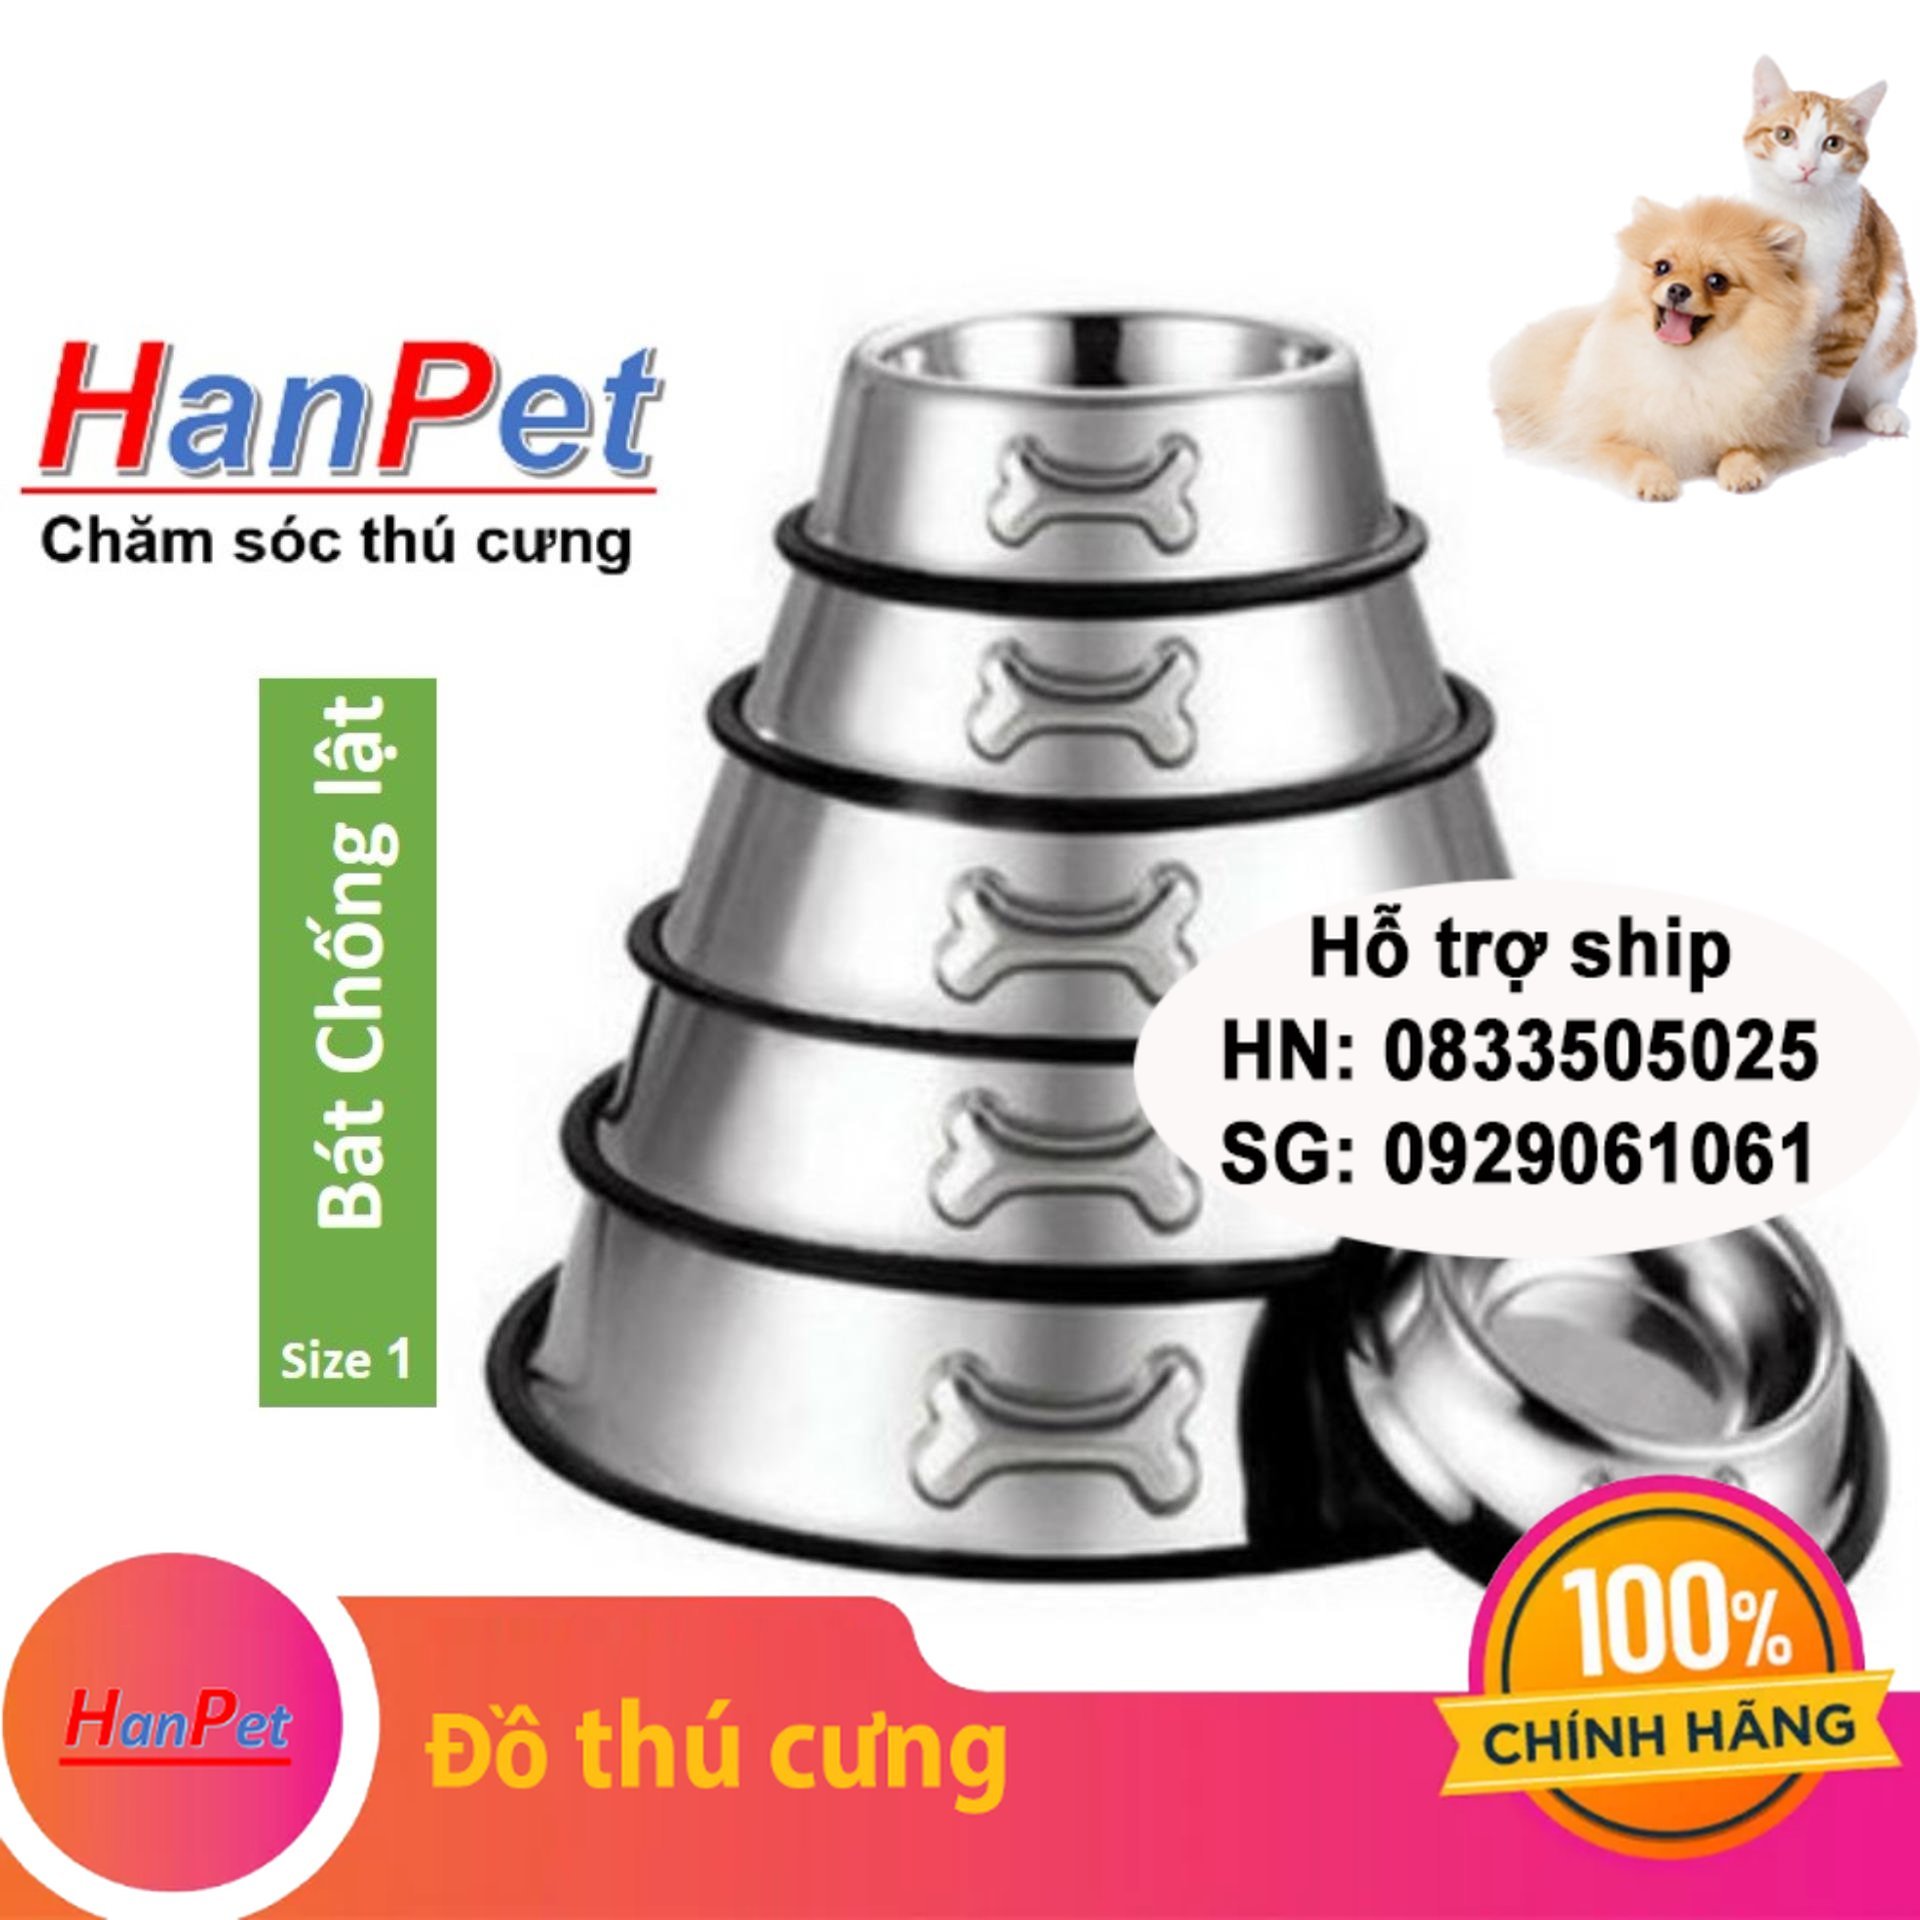 Hanpet - Bát chén ăn inox KHÔNG GỈ chống lật size 1 dành cho chó mèo dưới